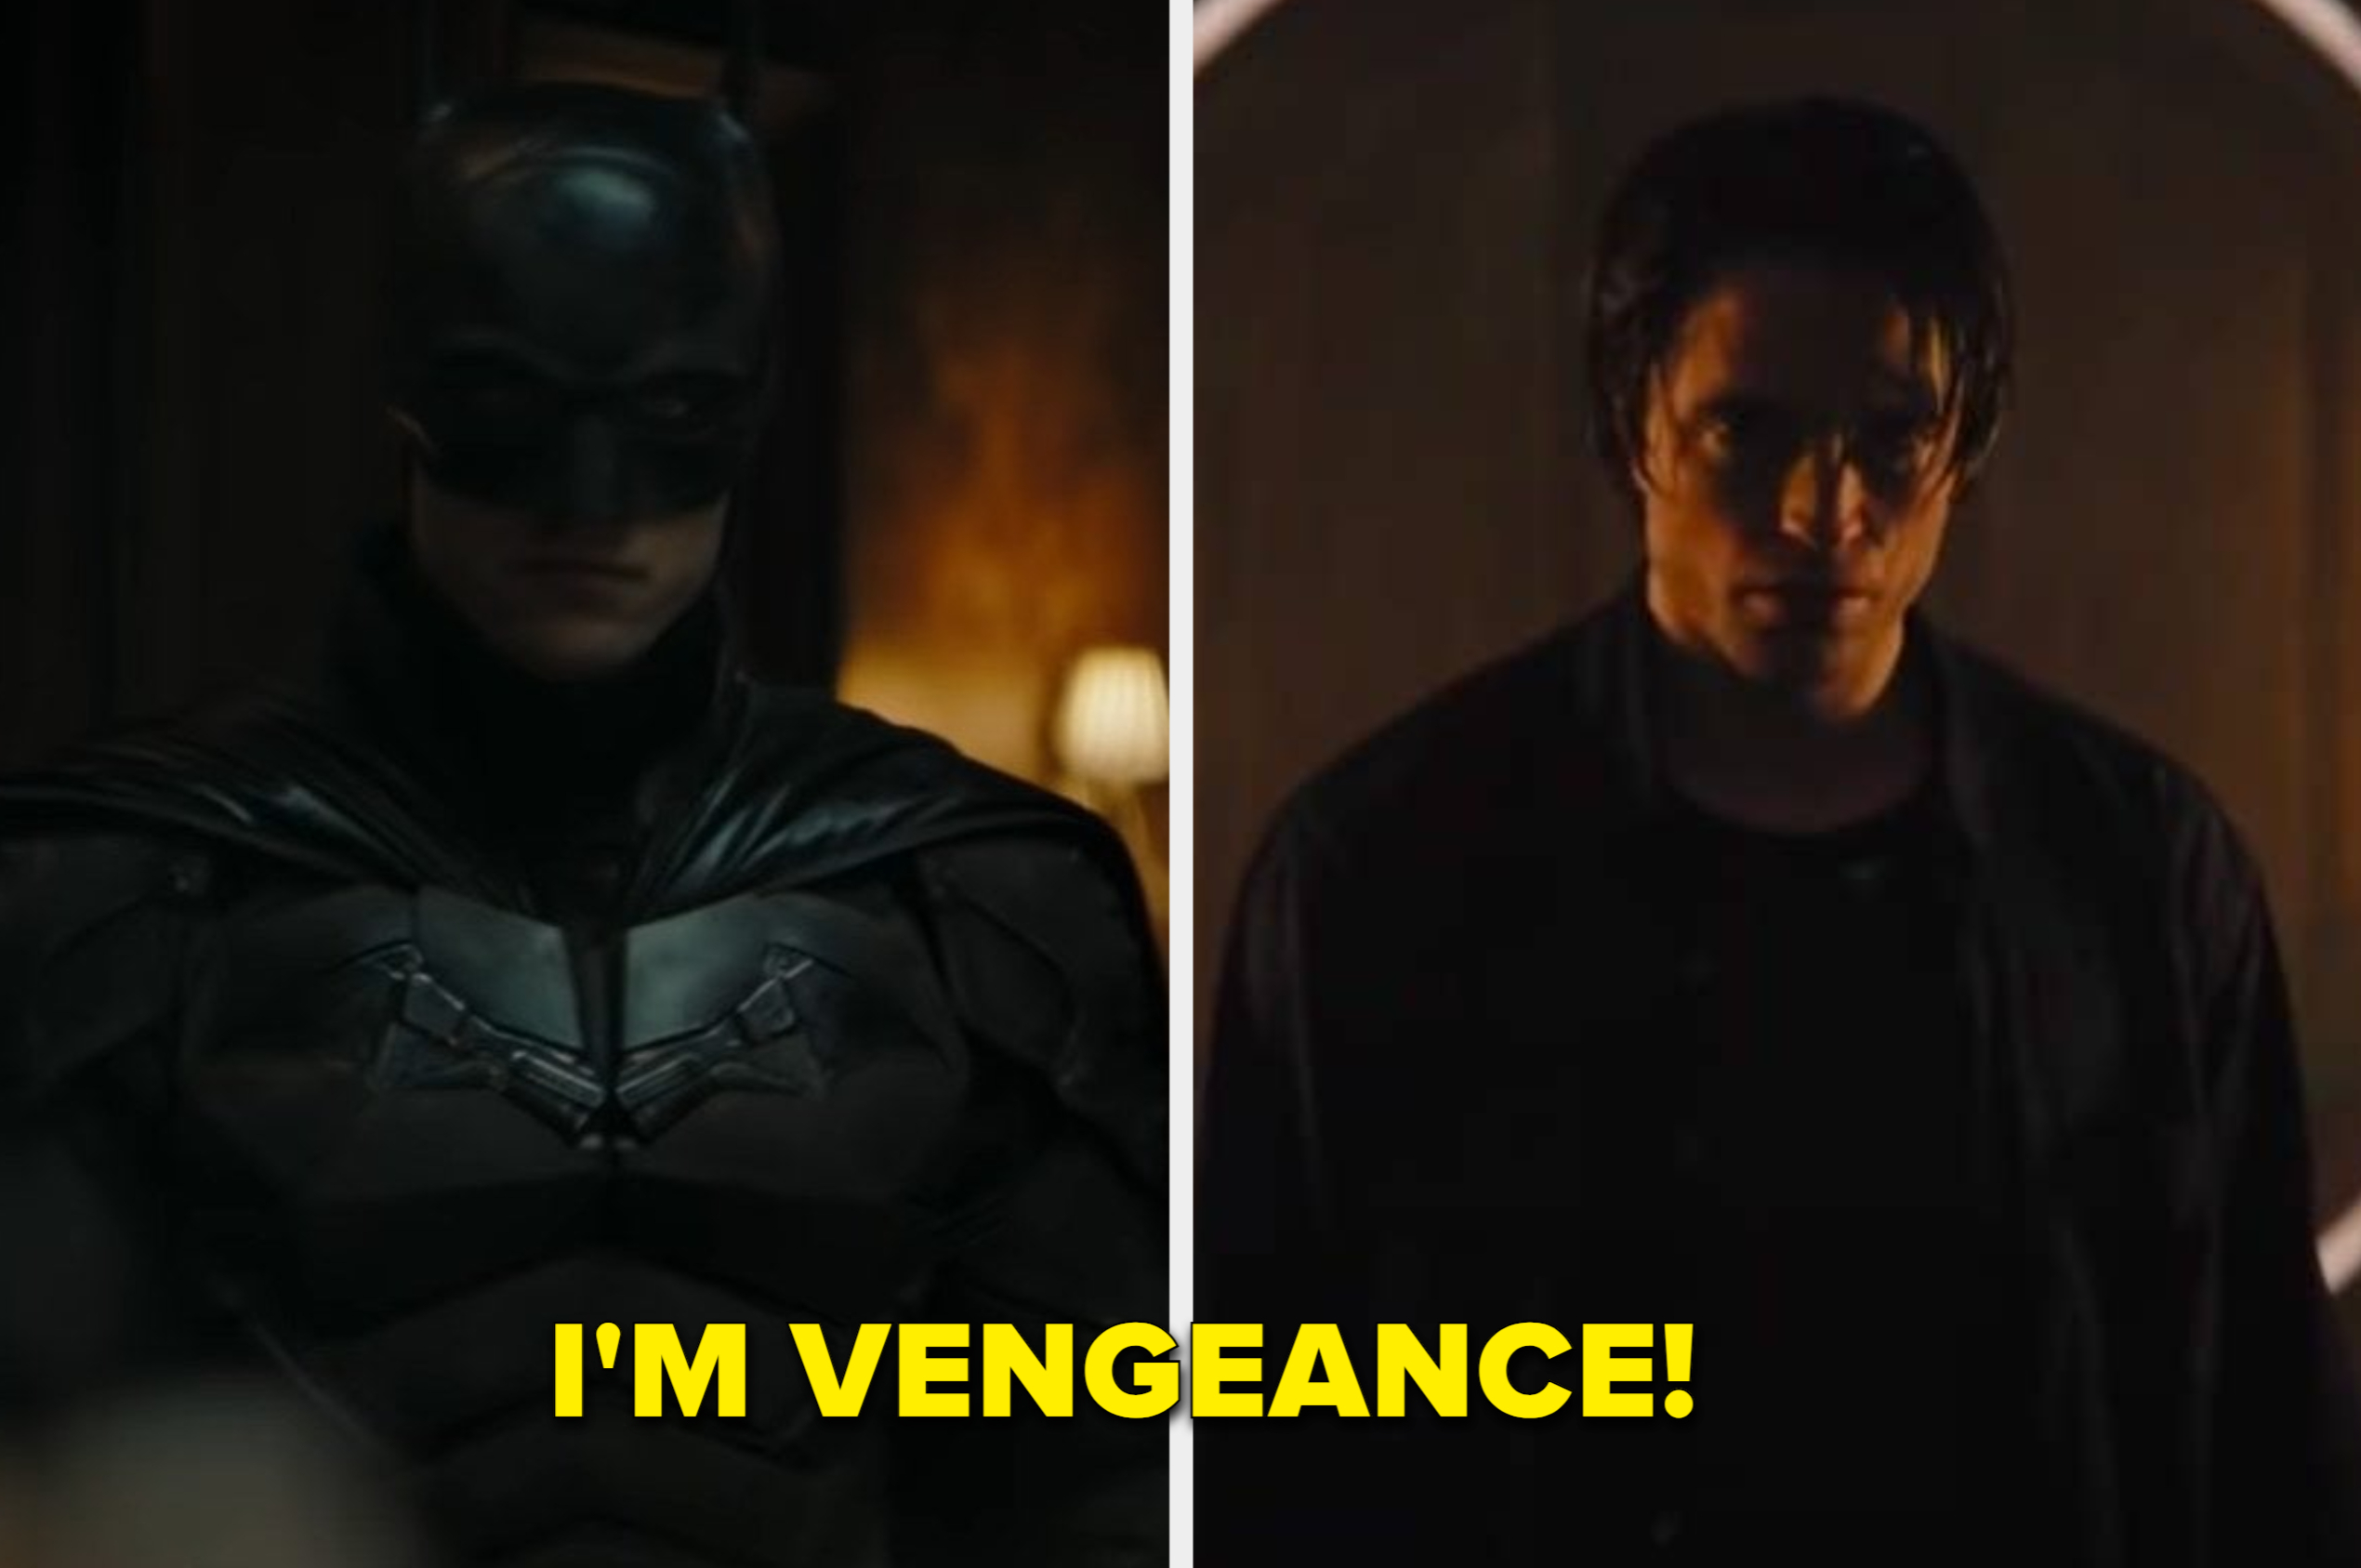 best actors for batman reboot